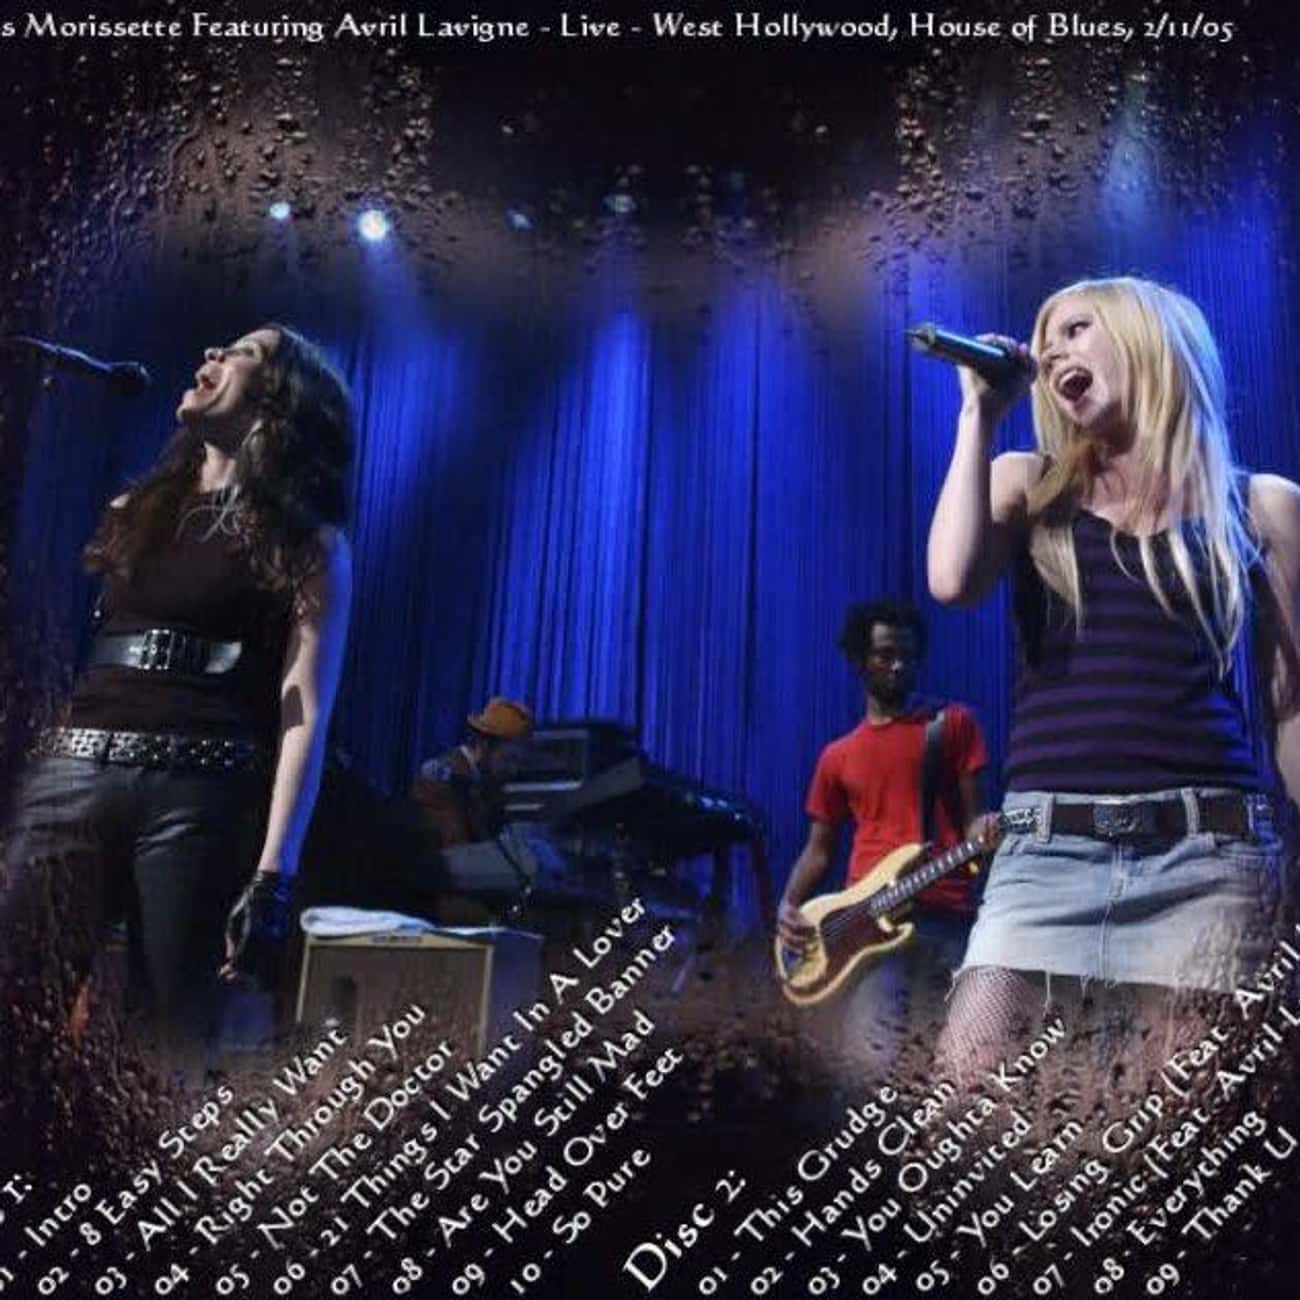 Alanis Morissette &amp; Avril Lavigne